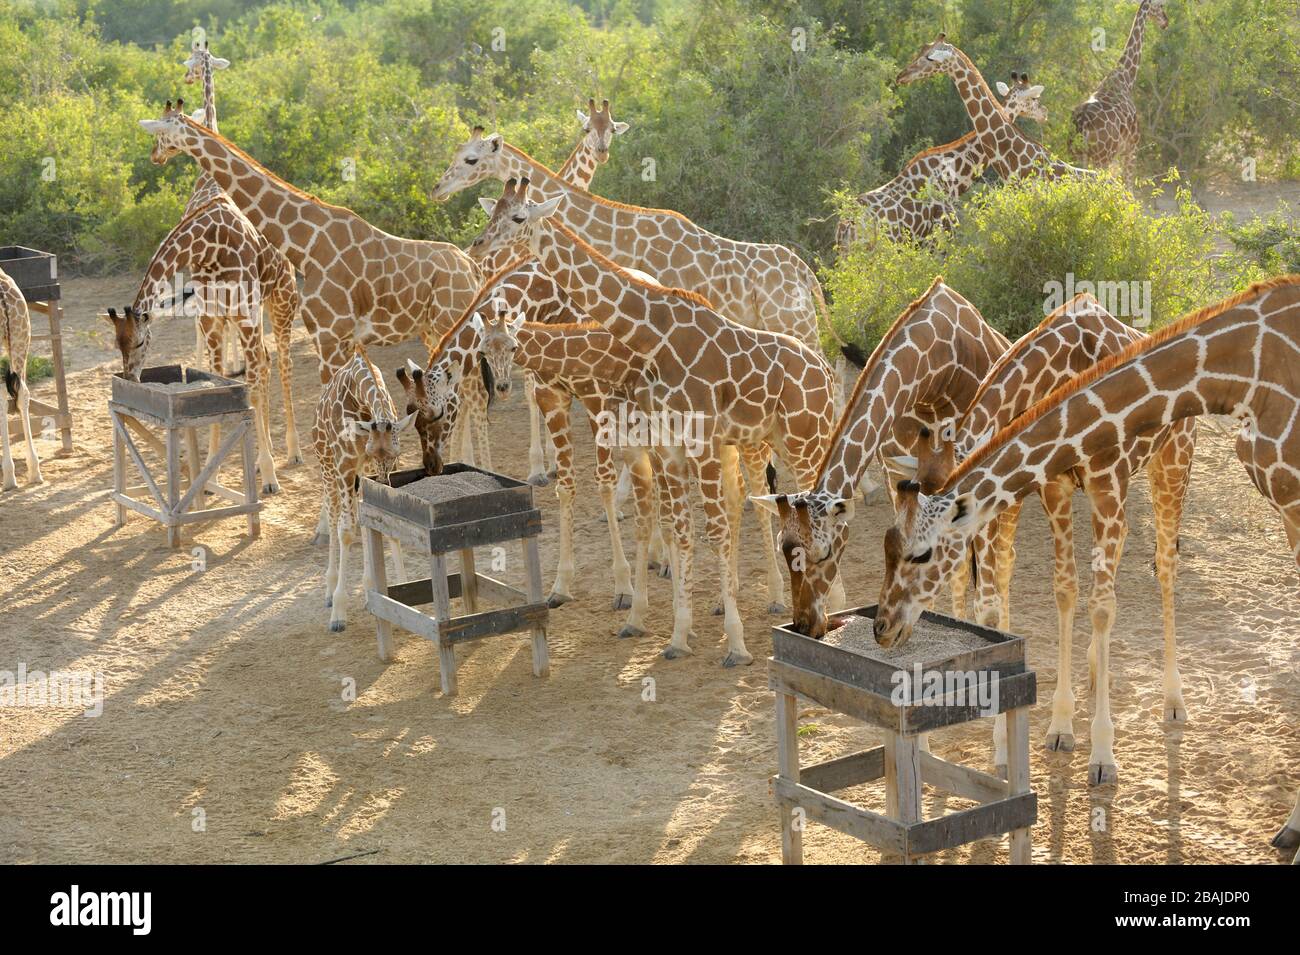 Adultos y jirafa (Giraffa camelopardalis) en la estación de alimentación de Sir Bani Yas Island, Abu Dhabi, Emiratos Árabes Unidos, noviembre Foto de stock